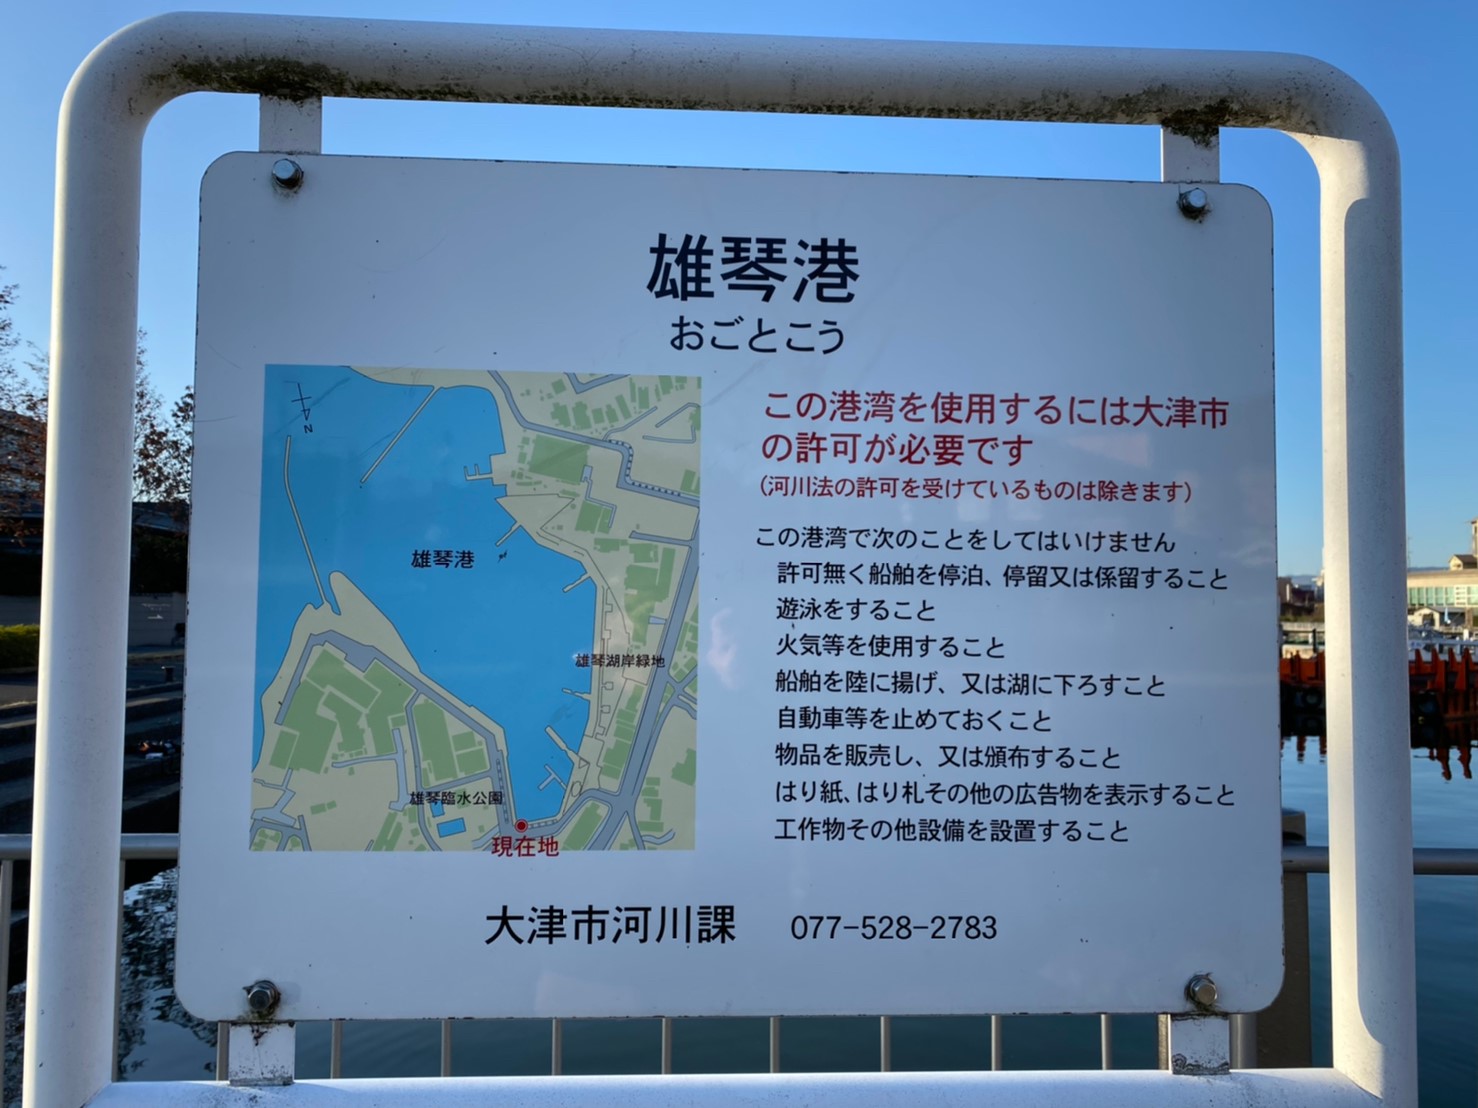 【琵琶湖南エリア】『大津市 雄琴港』の釣り場ガイド